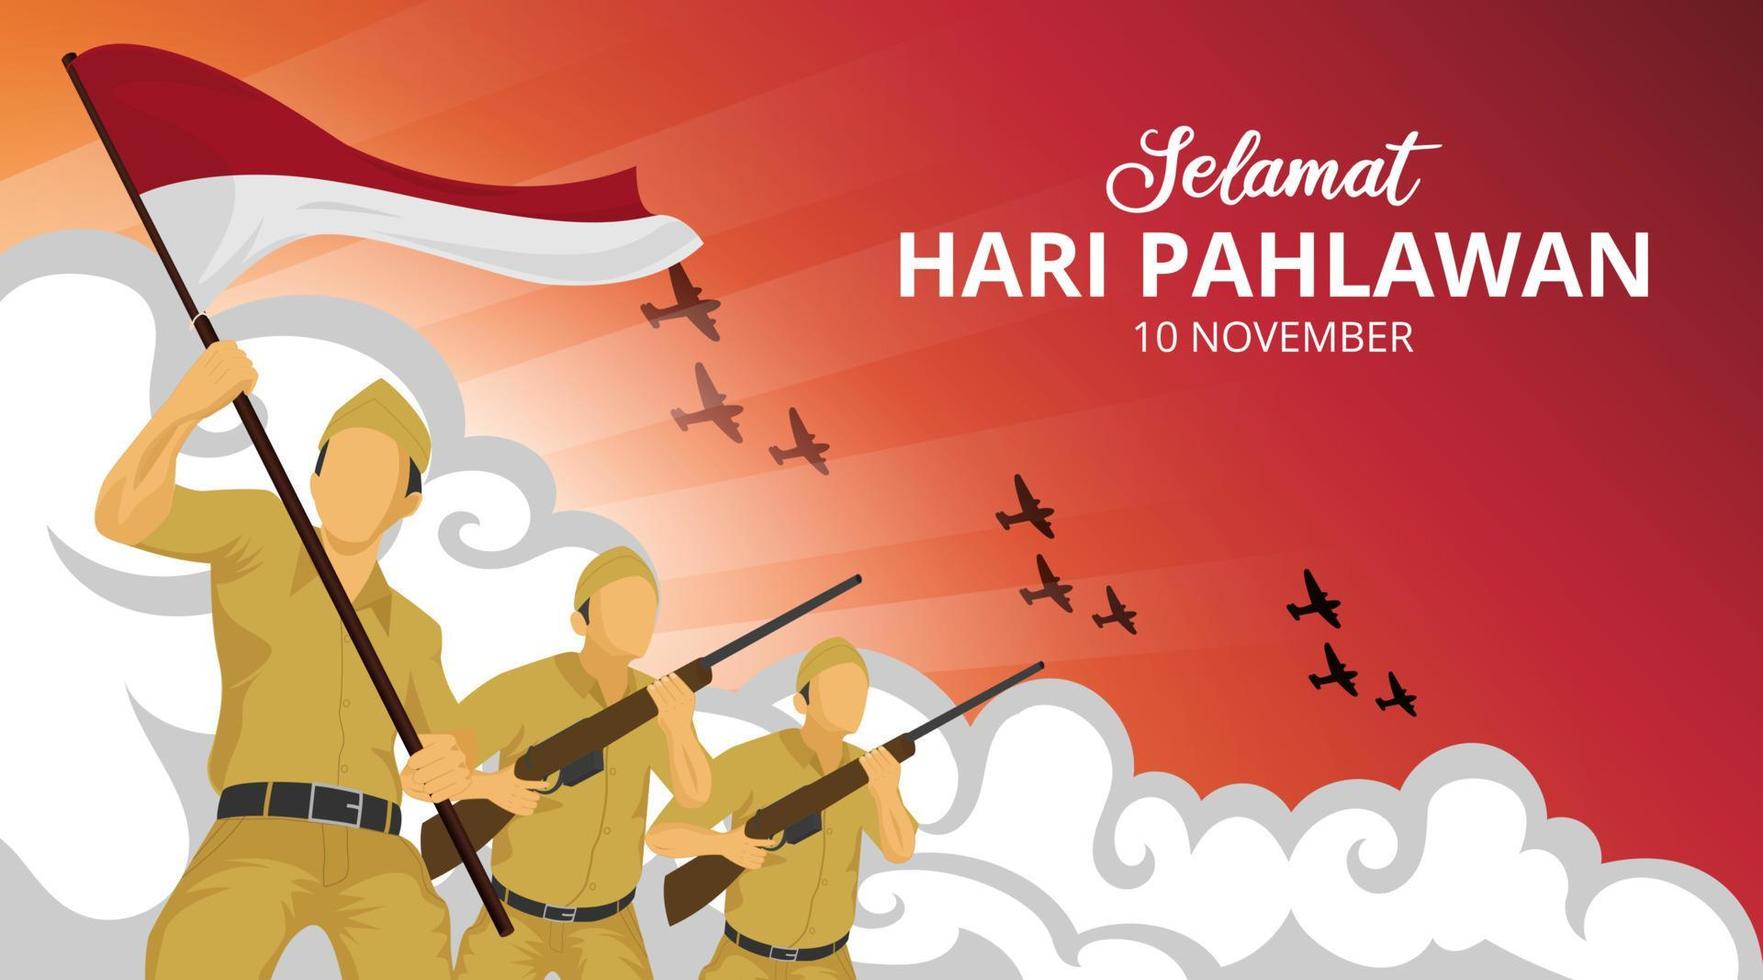 hari pahlawan oder indonesien heroes day hintergrund mit soldaten in der kampfillustration vektor